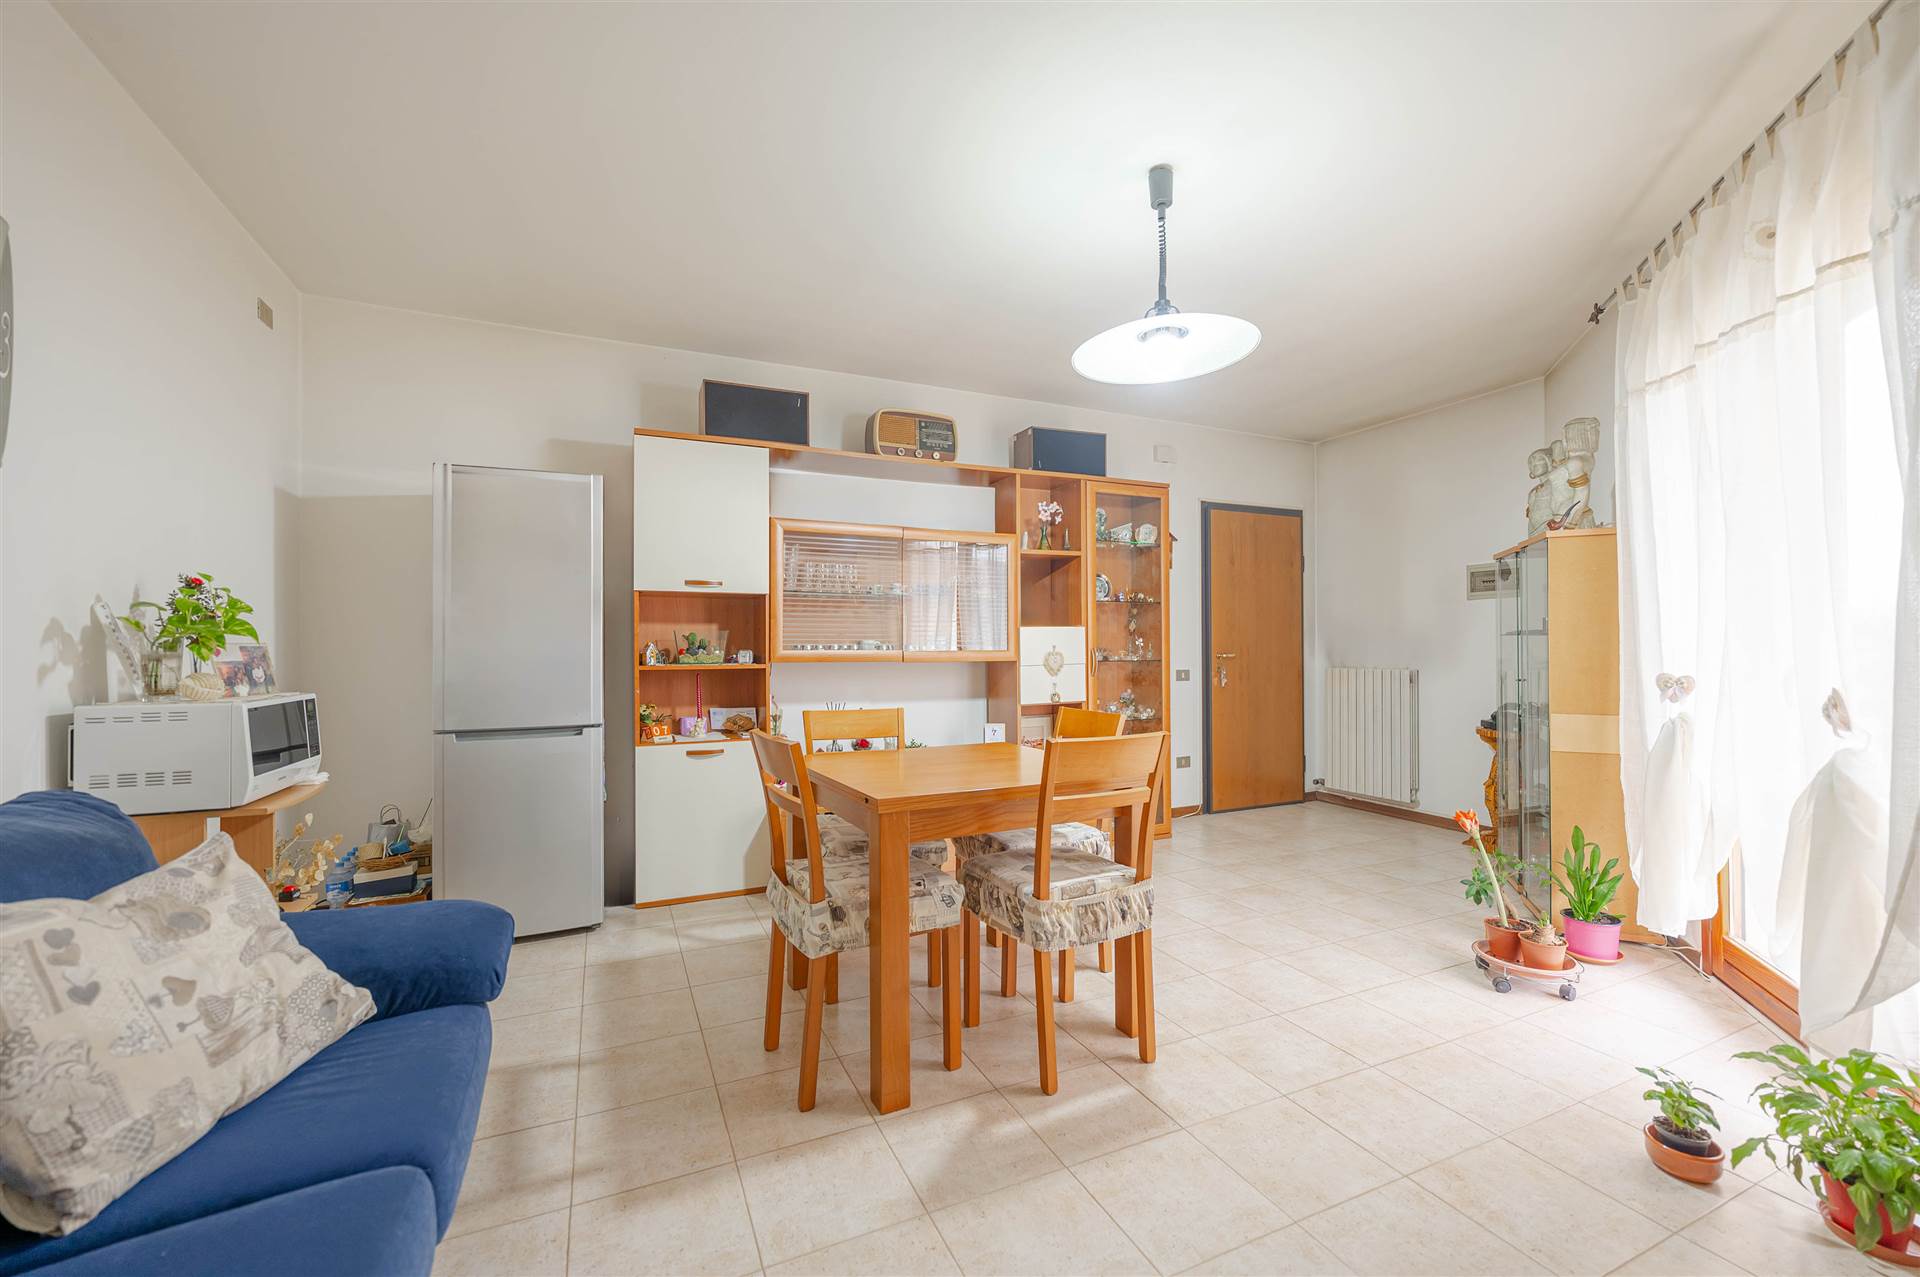 Appartamento in vendita a Vigonza, 4 locali, prezzo € 120.000 | PortaleAgenzieImmobiliari.it